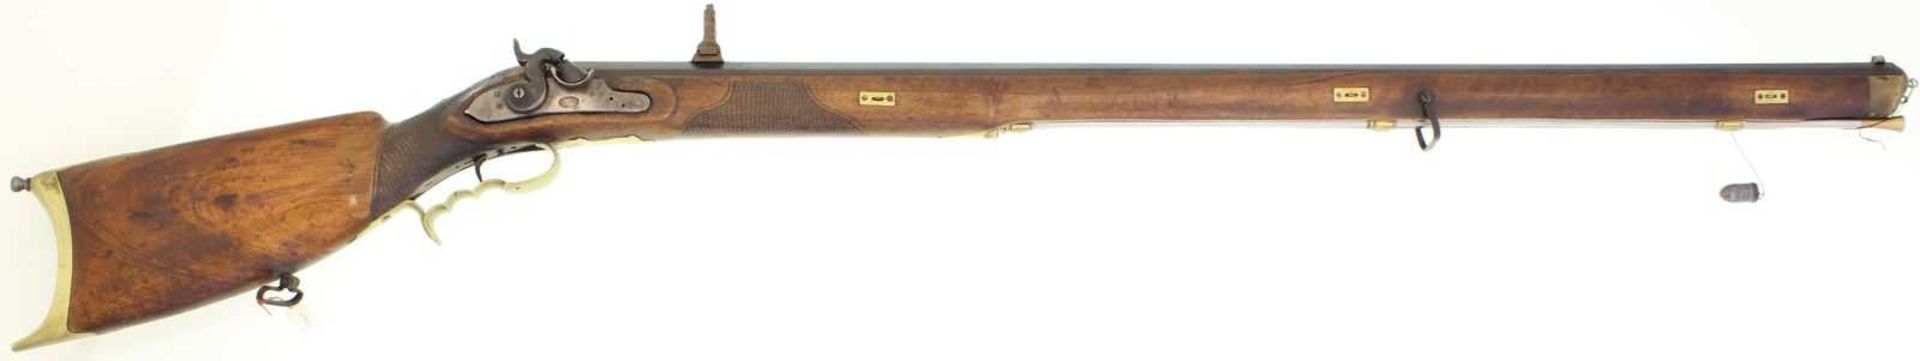 Scharfschützen-Stutzer, ca. 1820, Kanton Bern, Perkussionszündung, Kal. 16mm LL 955, brünierter